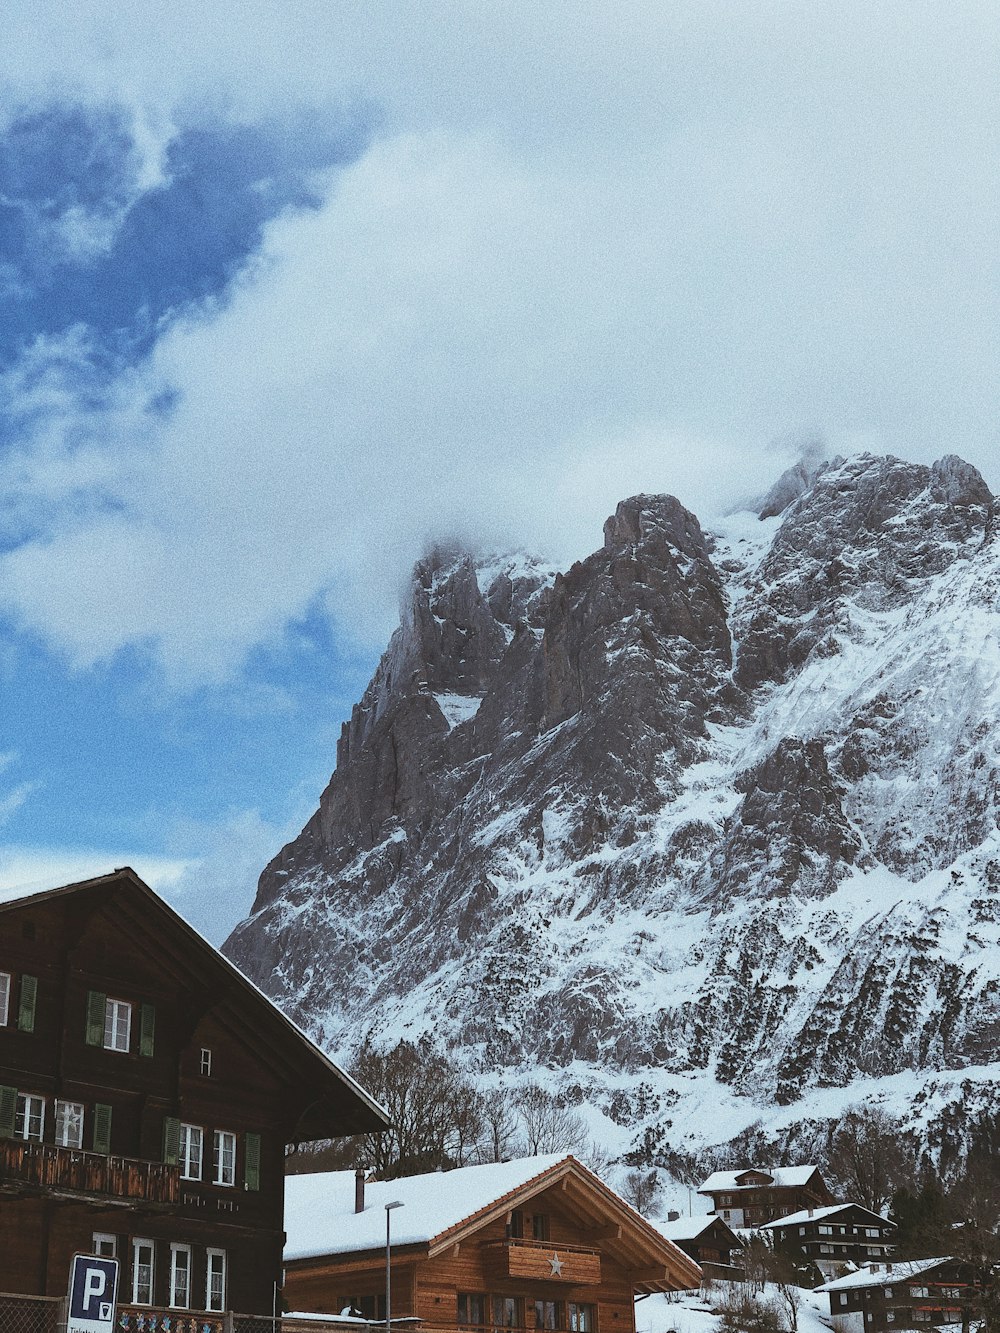 casas e cume da montanha coberto de neve sob o céu branco e azul